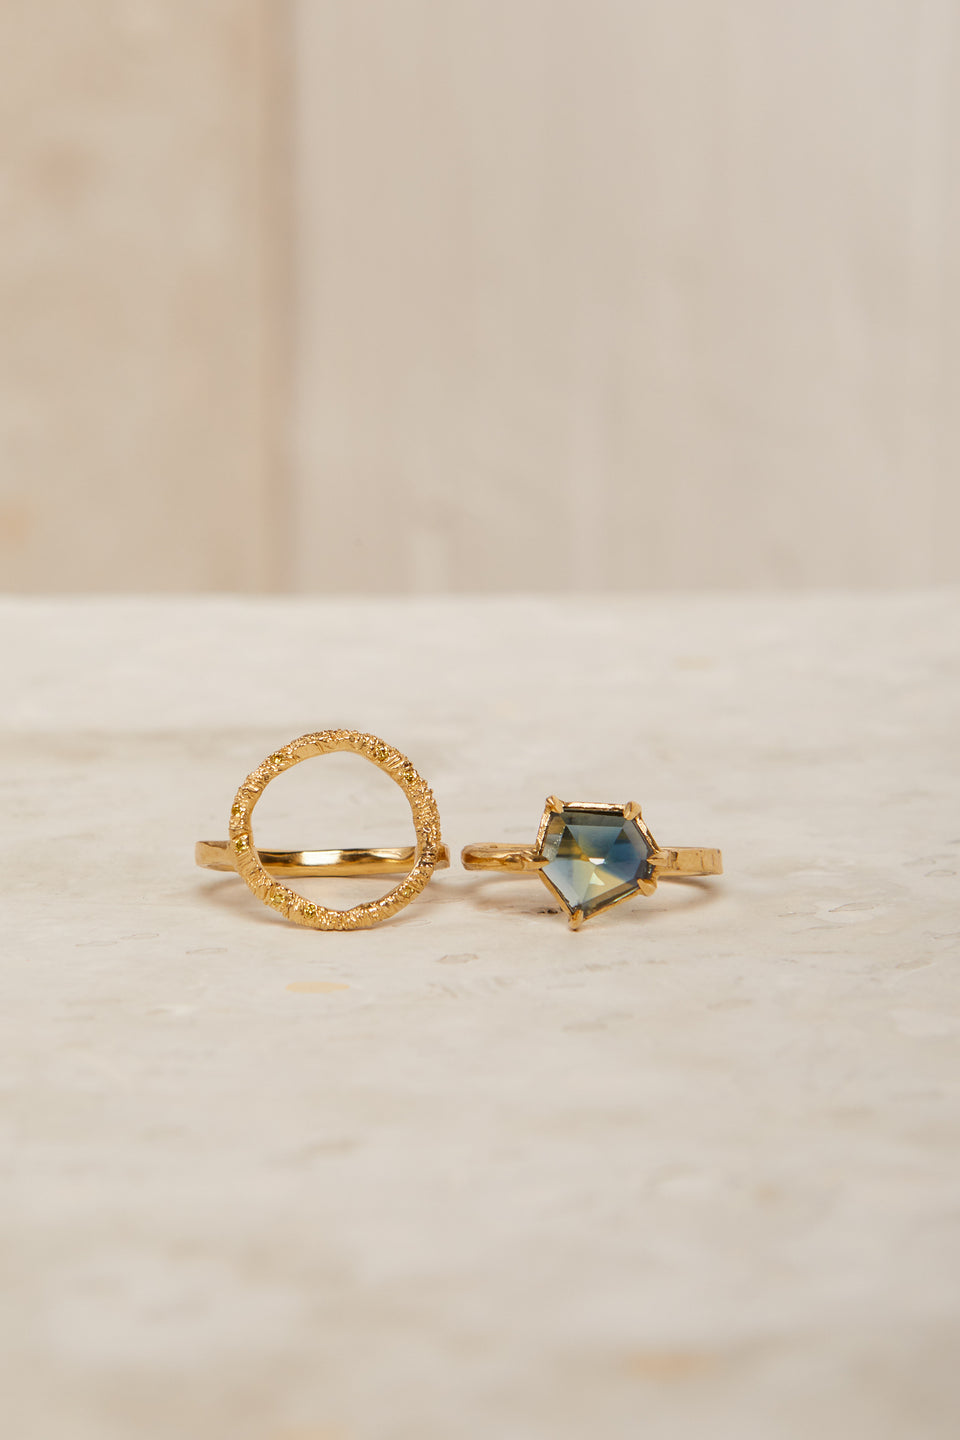 Sapphire + Diamond Halo Ring Pair